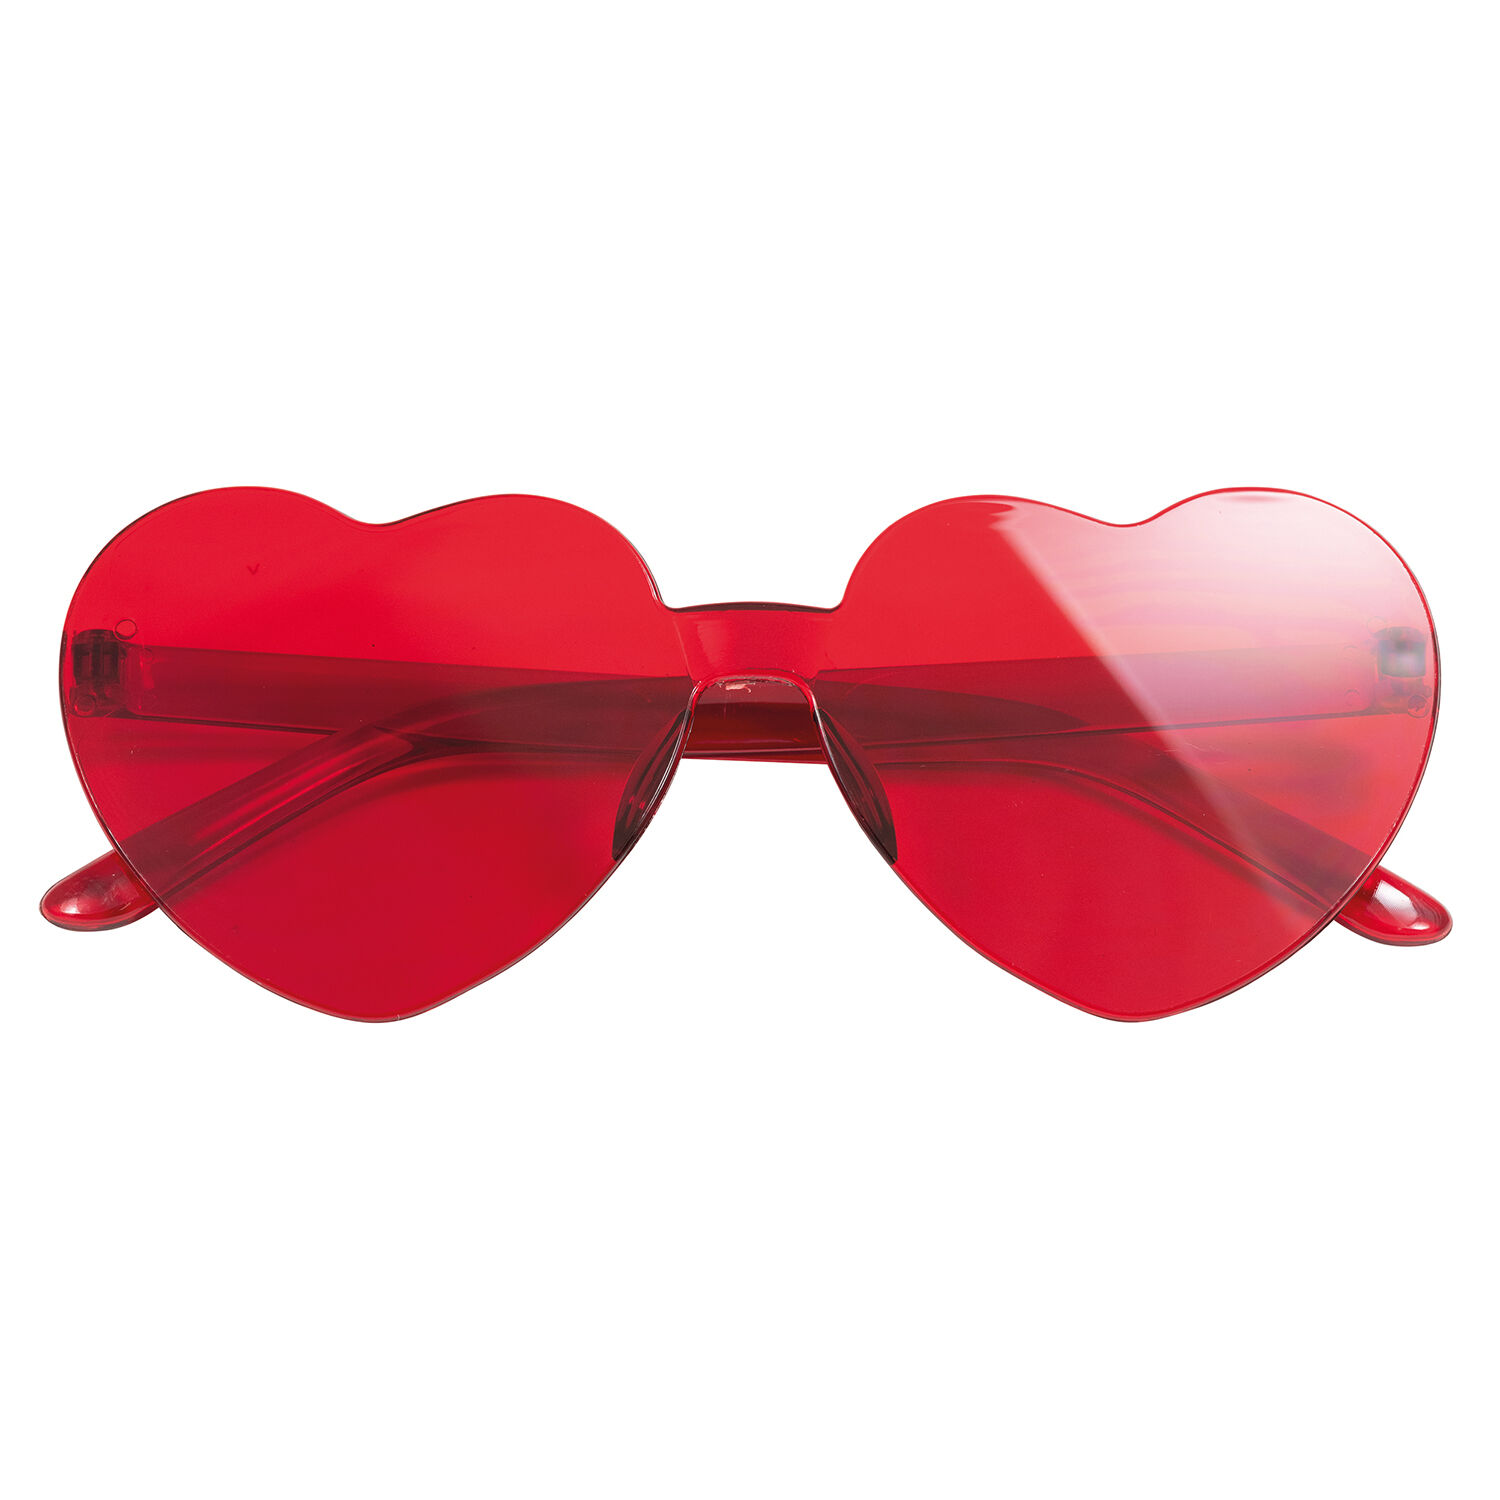 NEU Brille Herz, rahmenlos, rot, Herzbrille